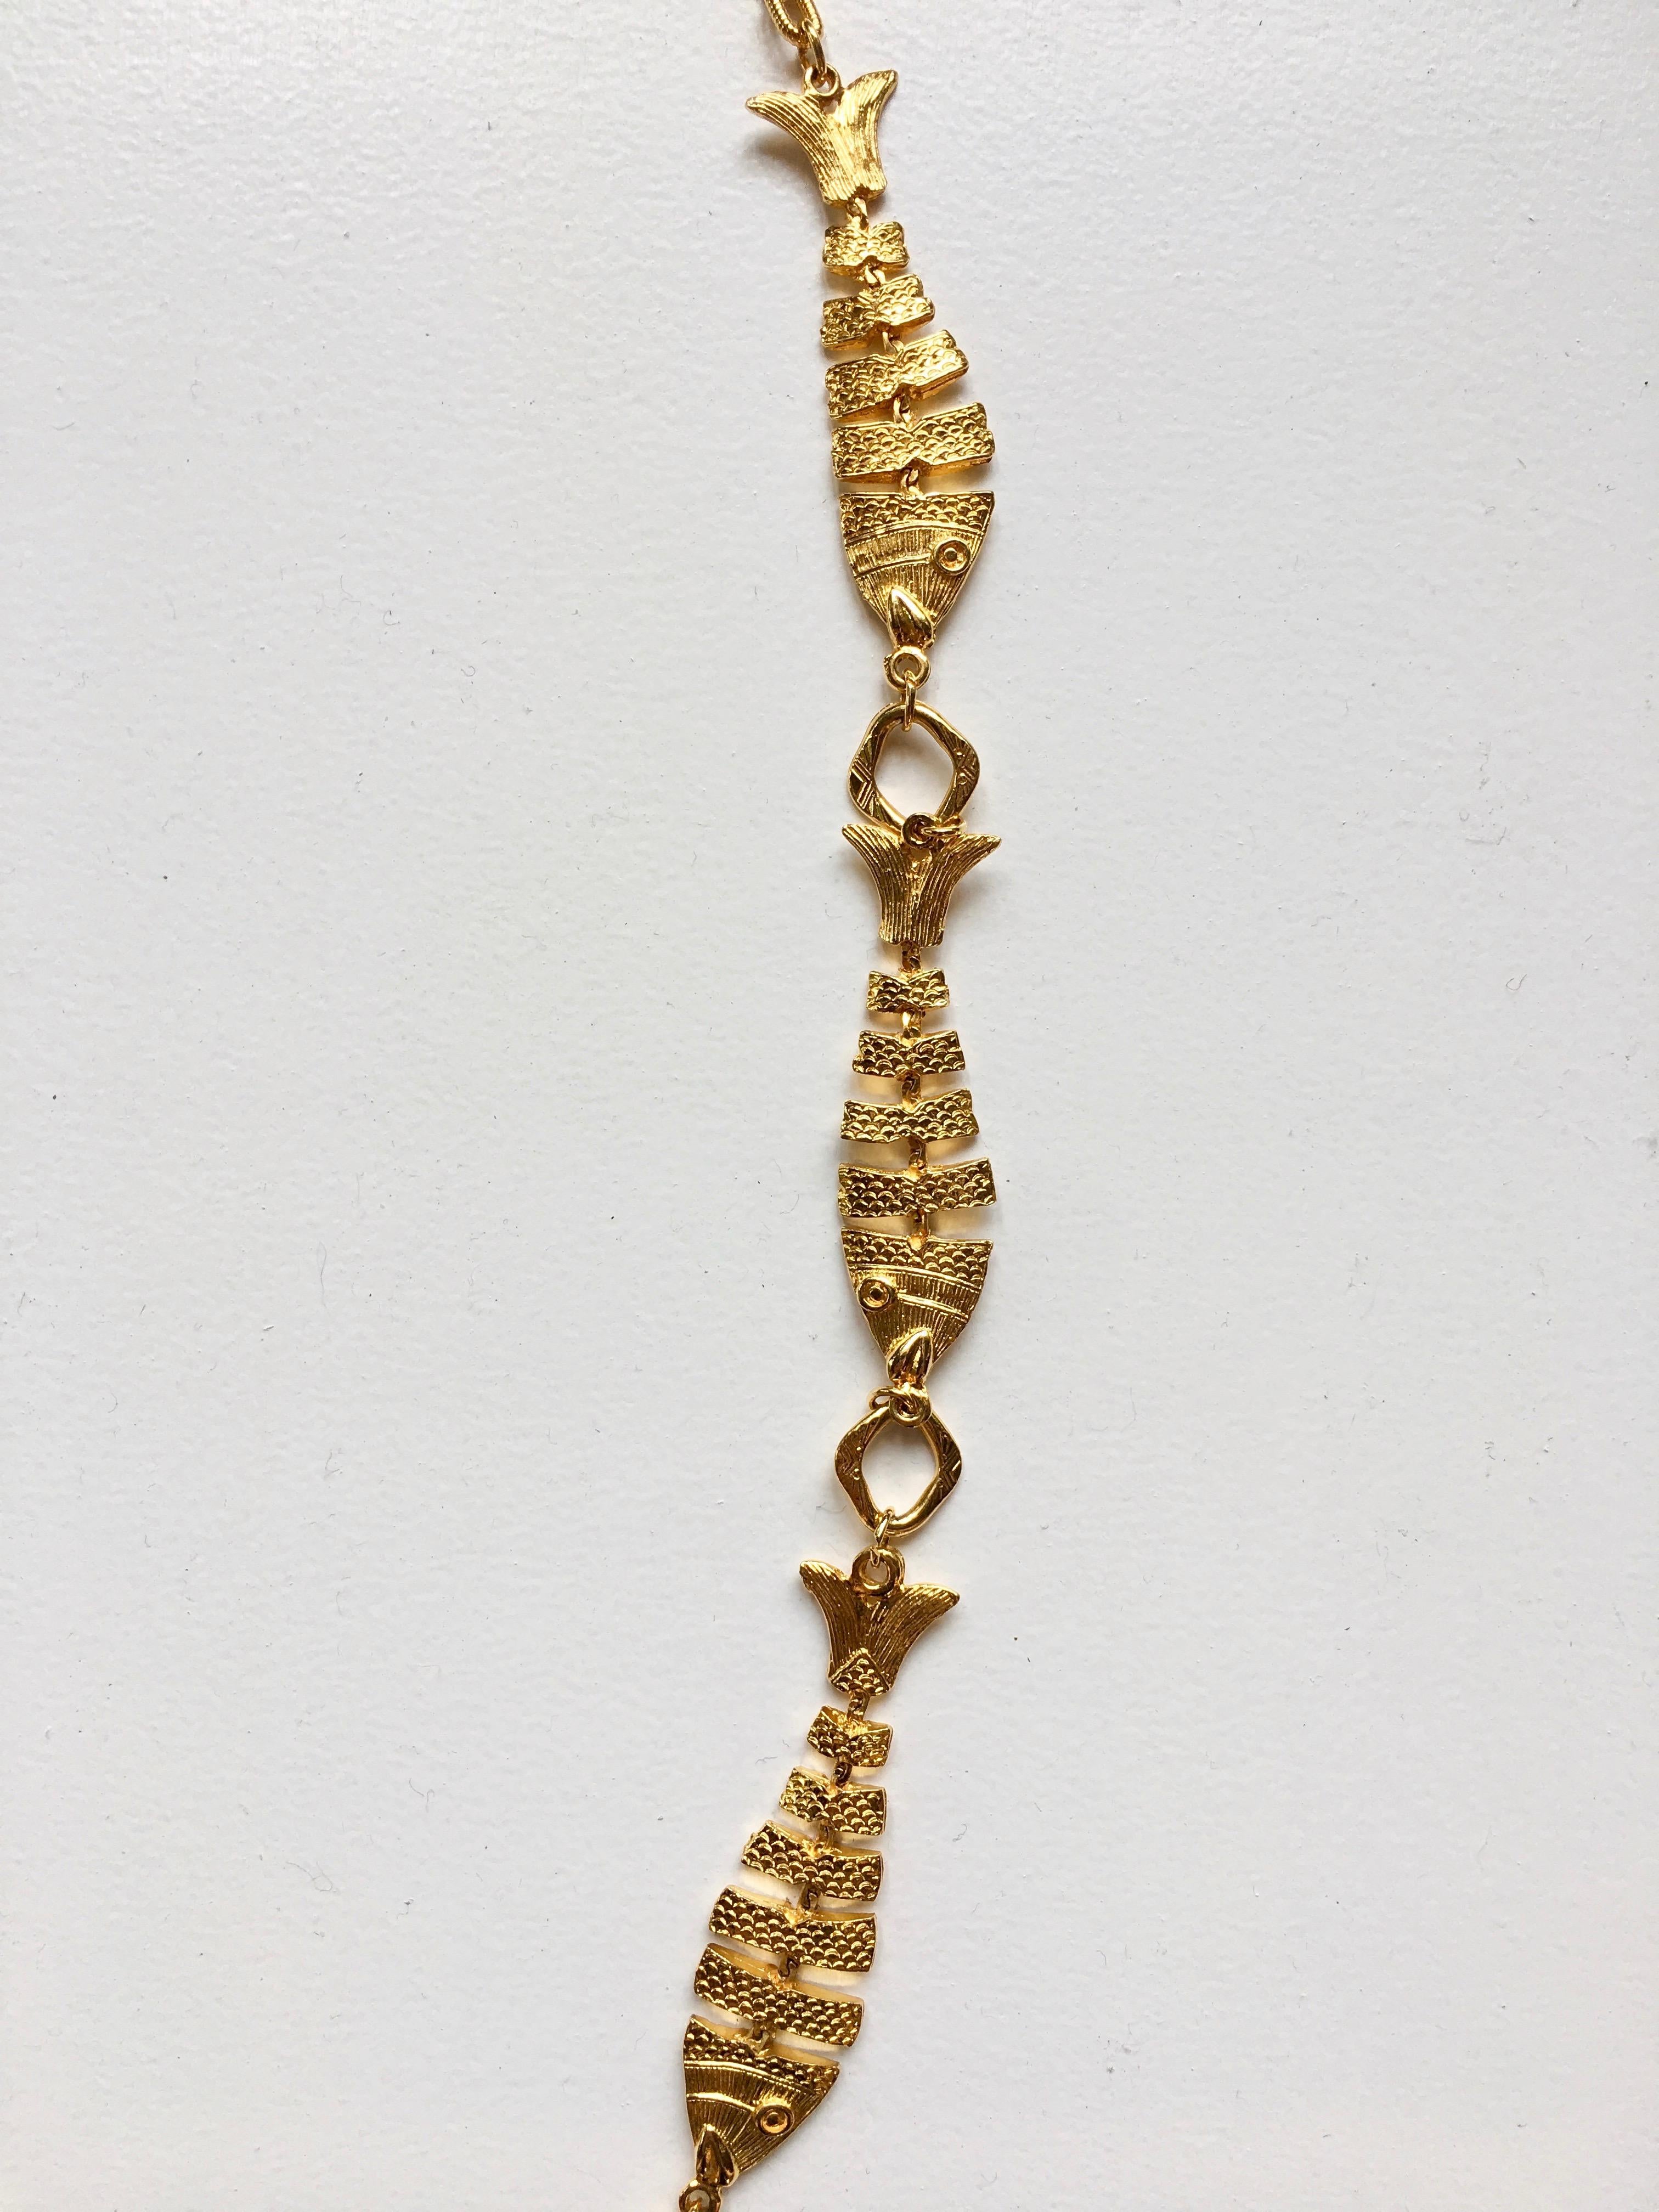 1970s Cadoro Goldtone Fish Necklace Original tags 1